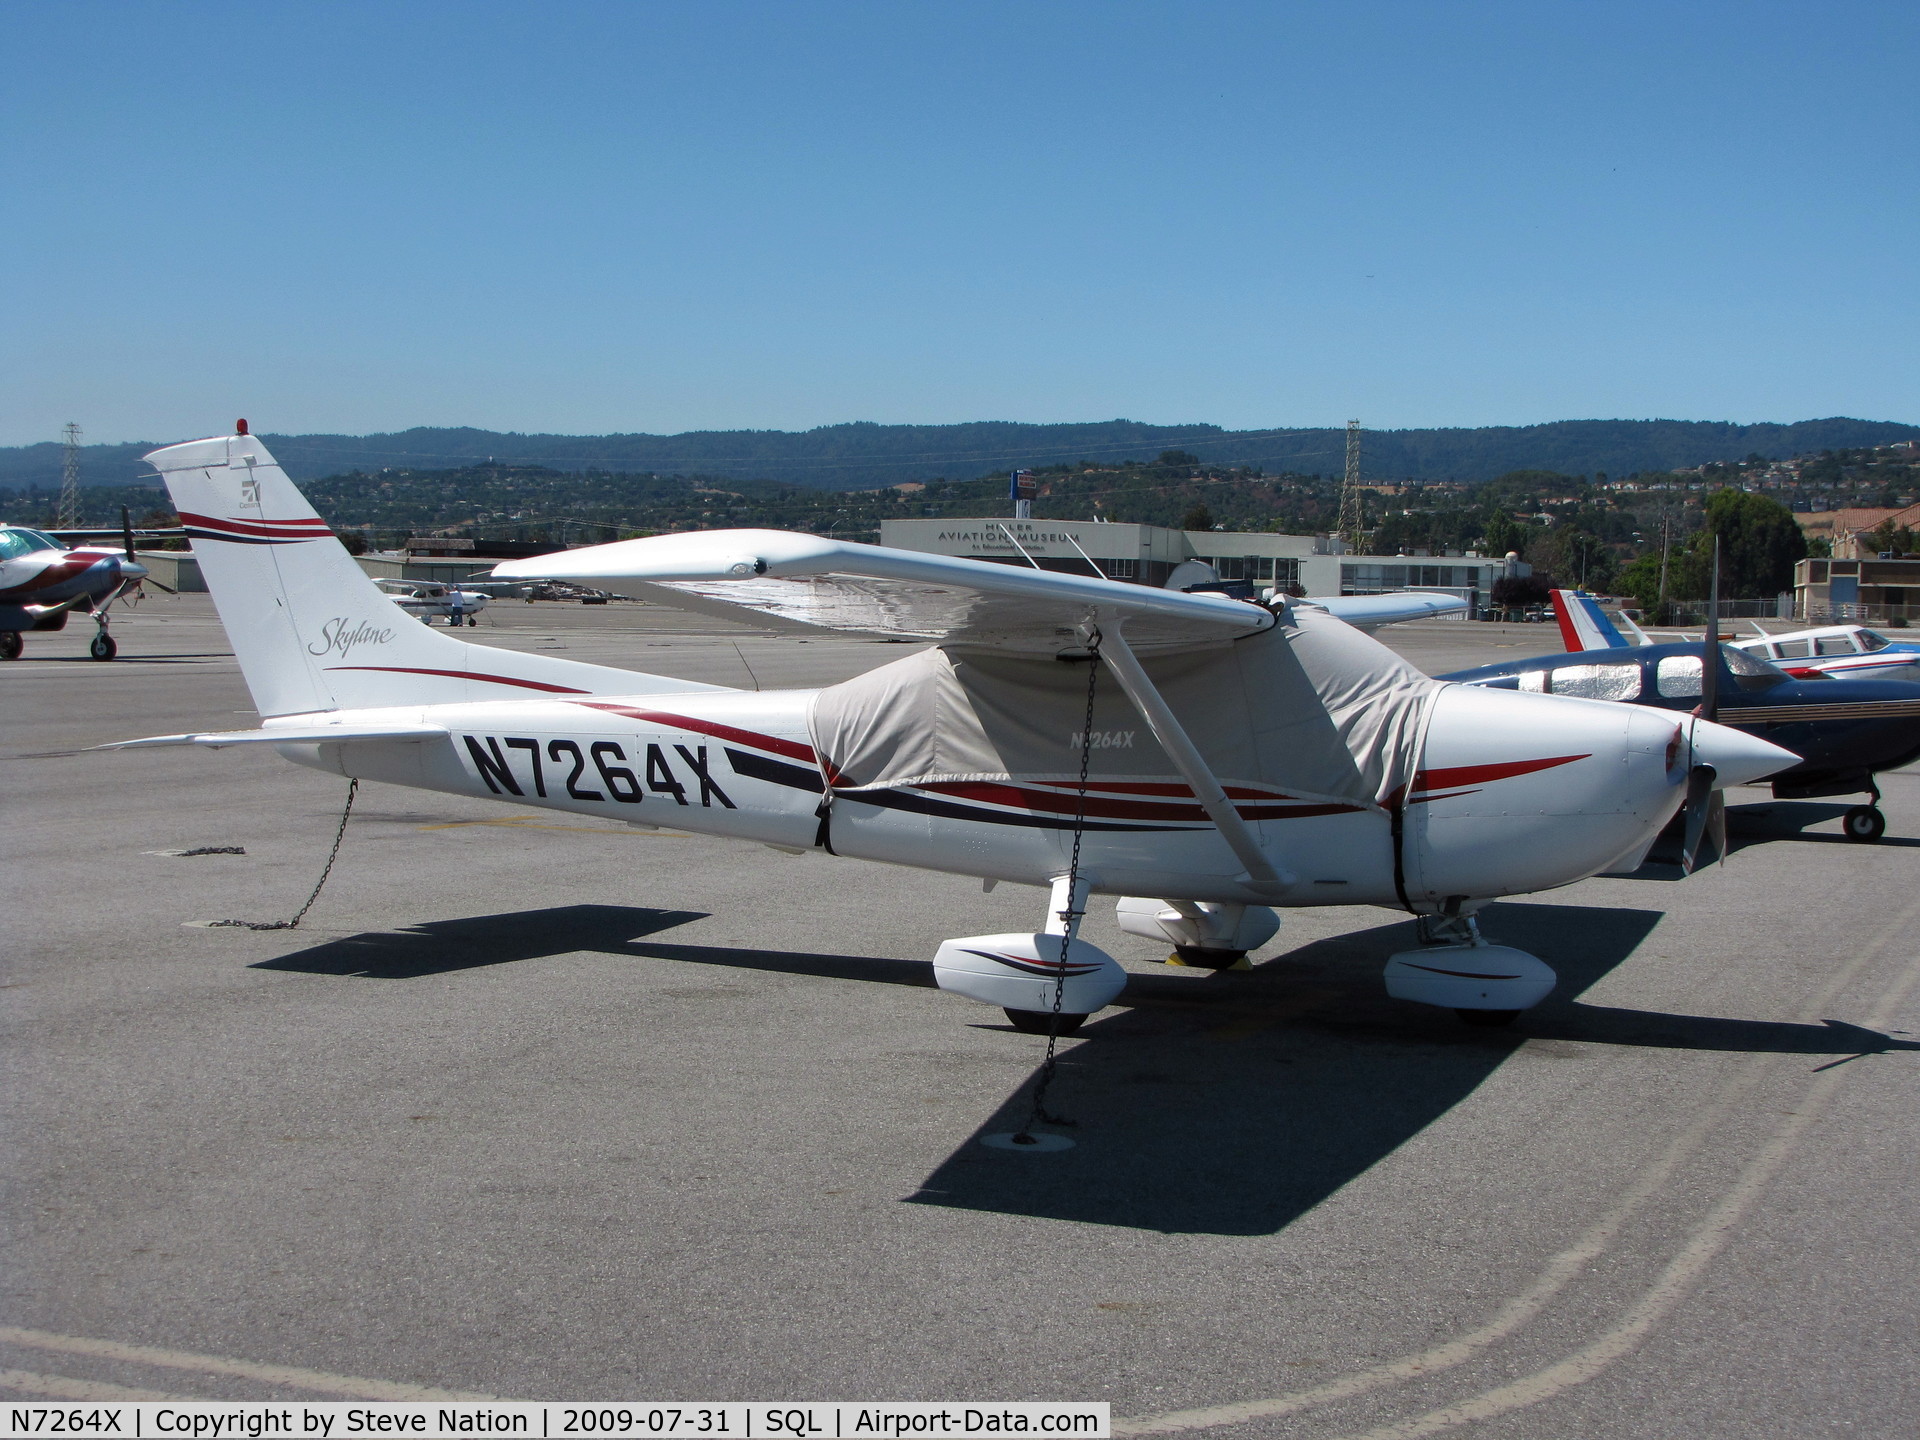 N7264X, 1999 Cessna 182S Skylane C/N 18280598, 1999 Cessna 182S on visitor's ramp